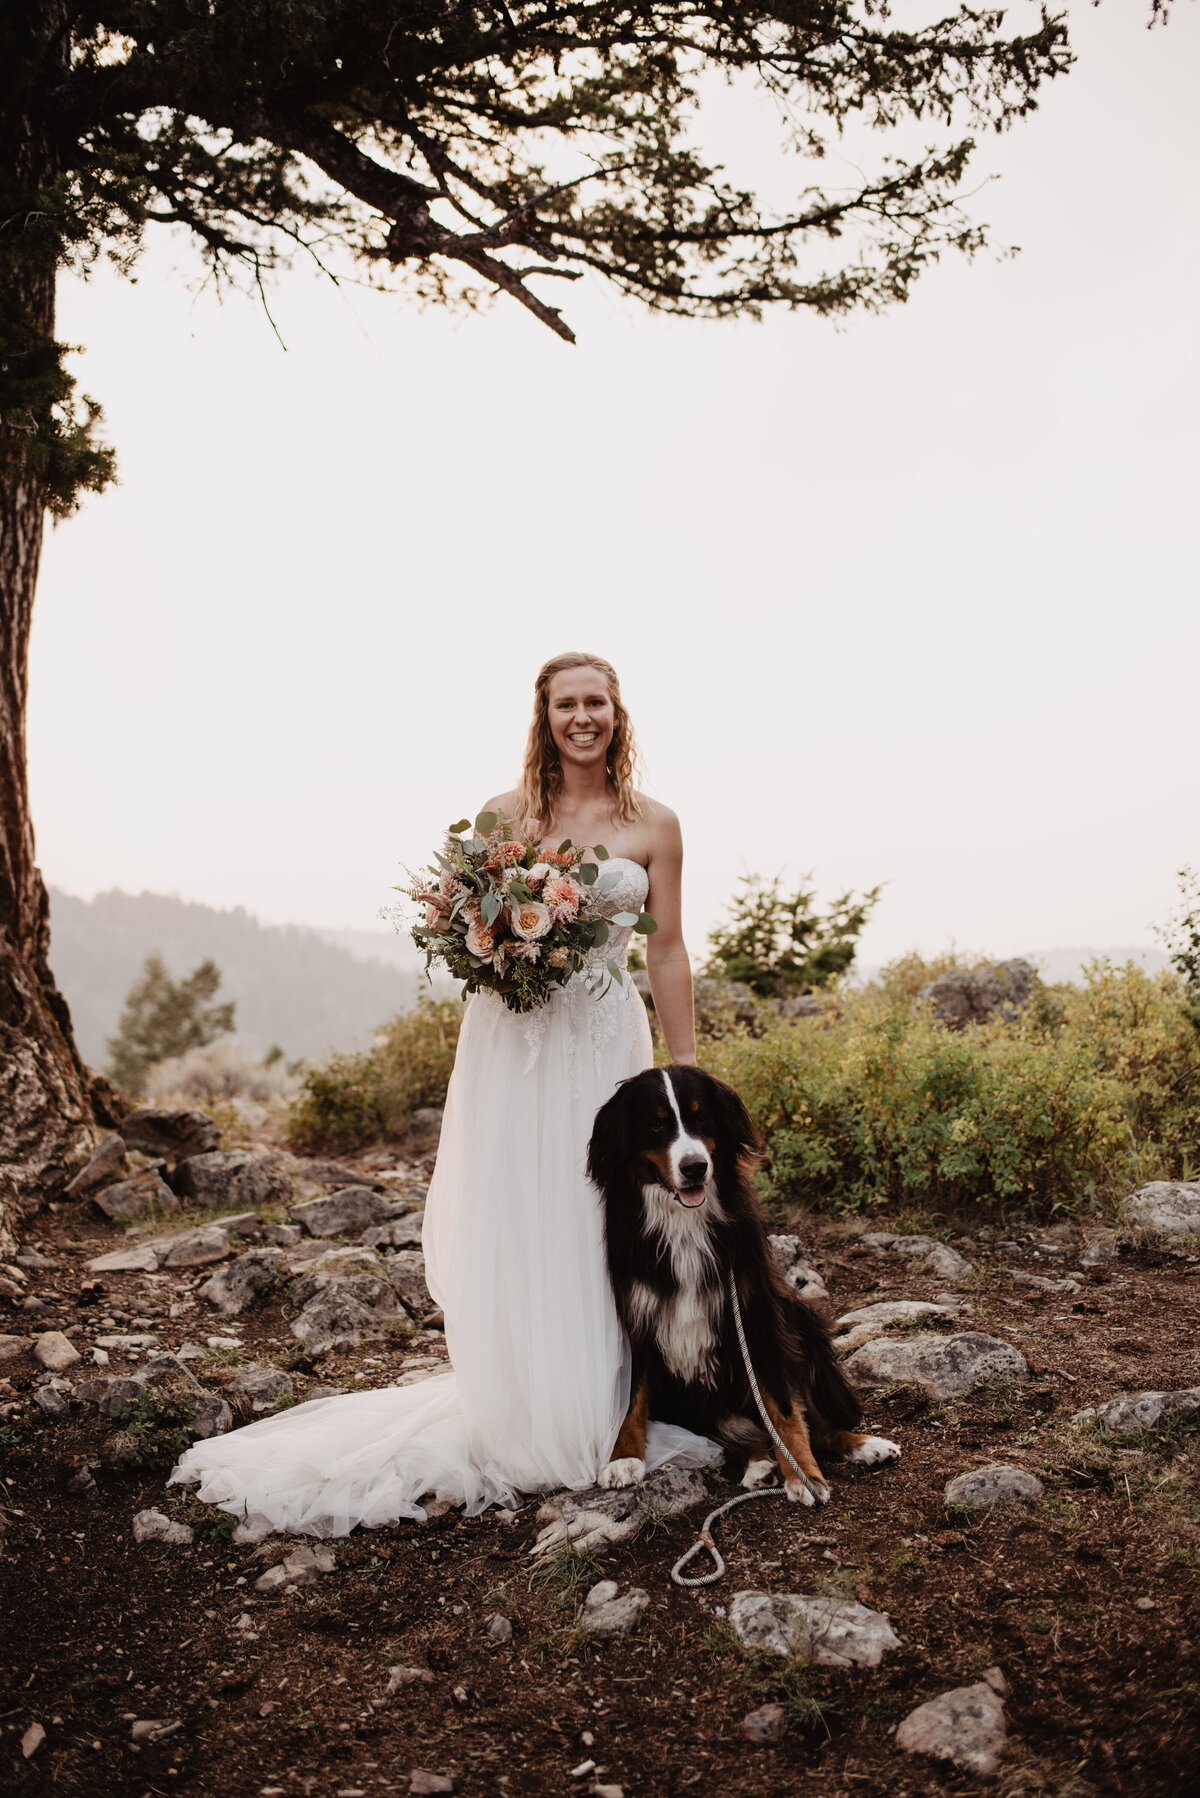 Jackson Hole Photographers capture bride with dog